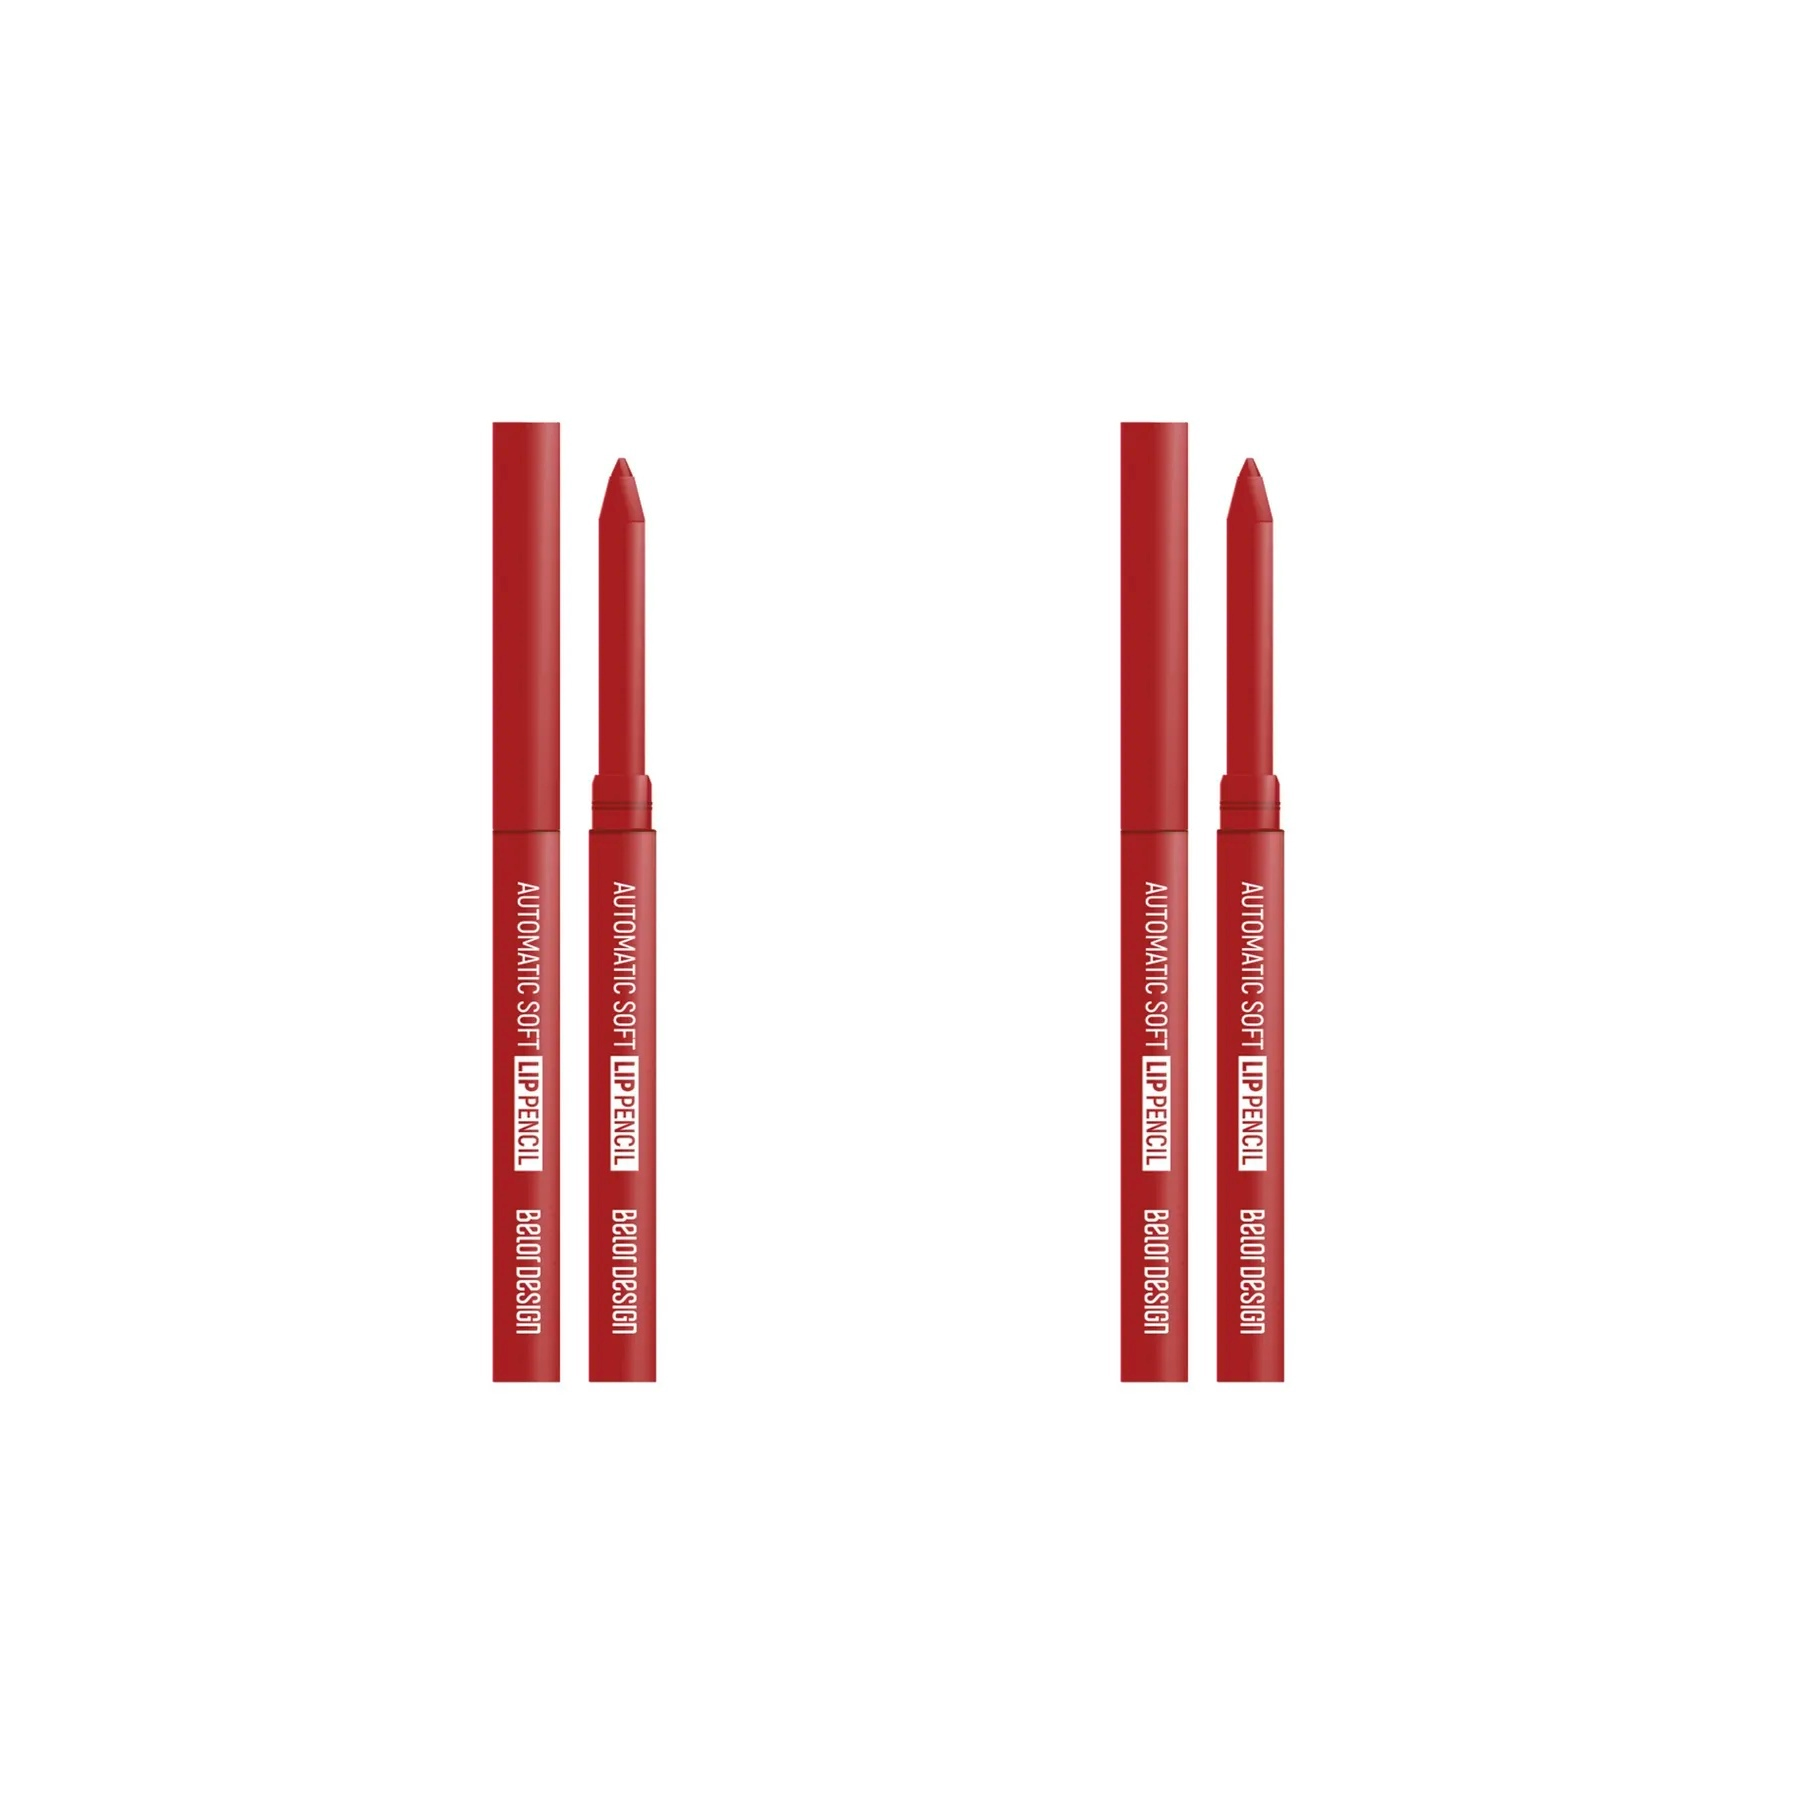 Карандаш для губ Belor Design Механический Automatic Soft Тон 206 Красный, 2 шт. карандаш для губ belor design механический automatic soft тон 206 красный 3 штуки